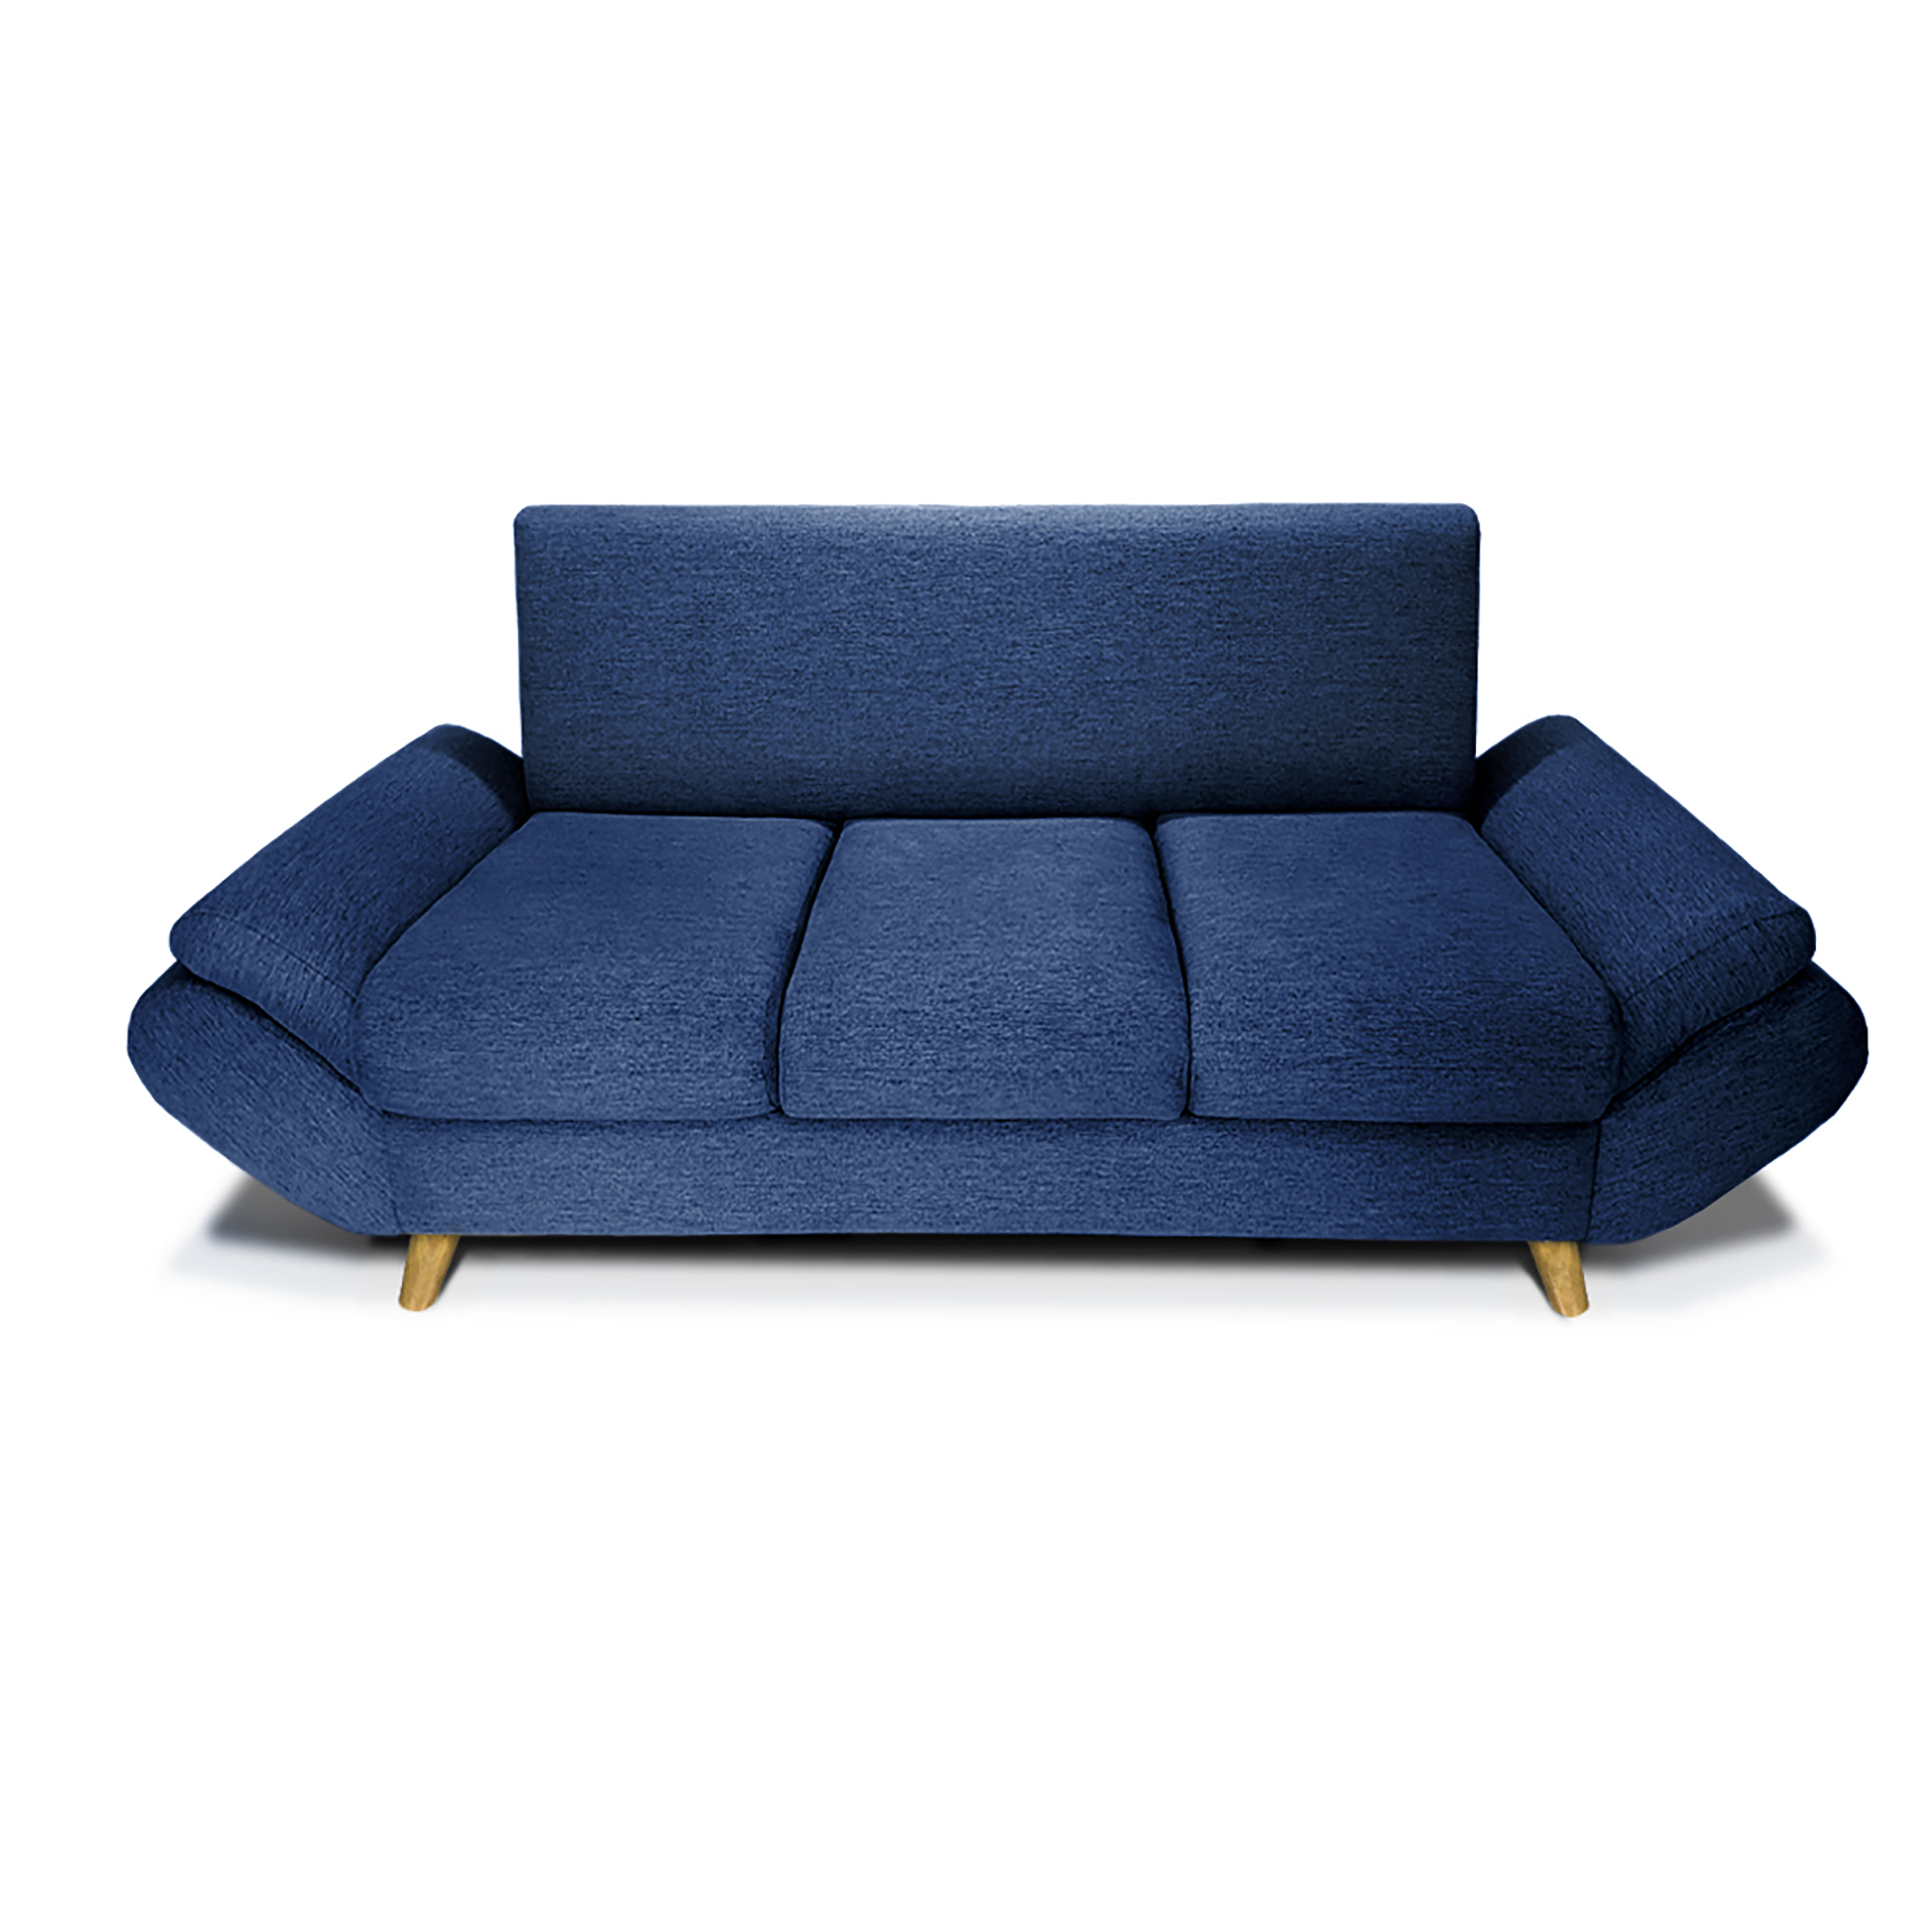 Sofa Cama Comfort Sistema Clic Clac Color Coral - Luegopago